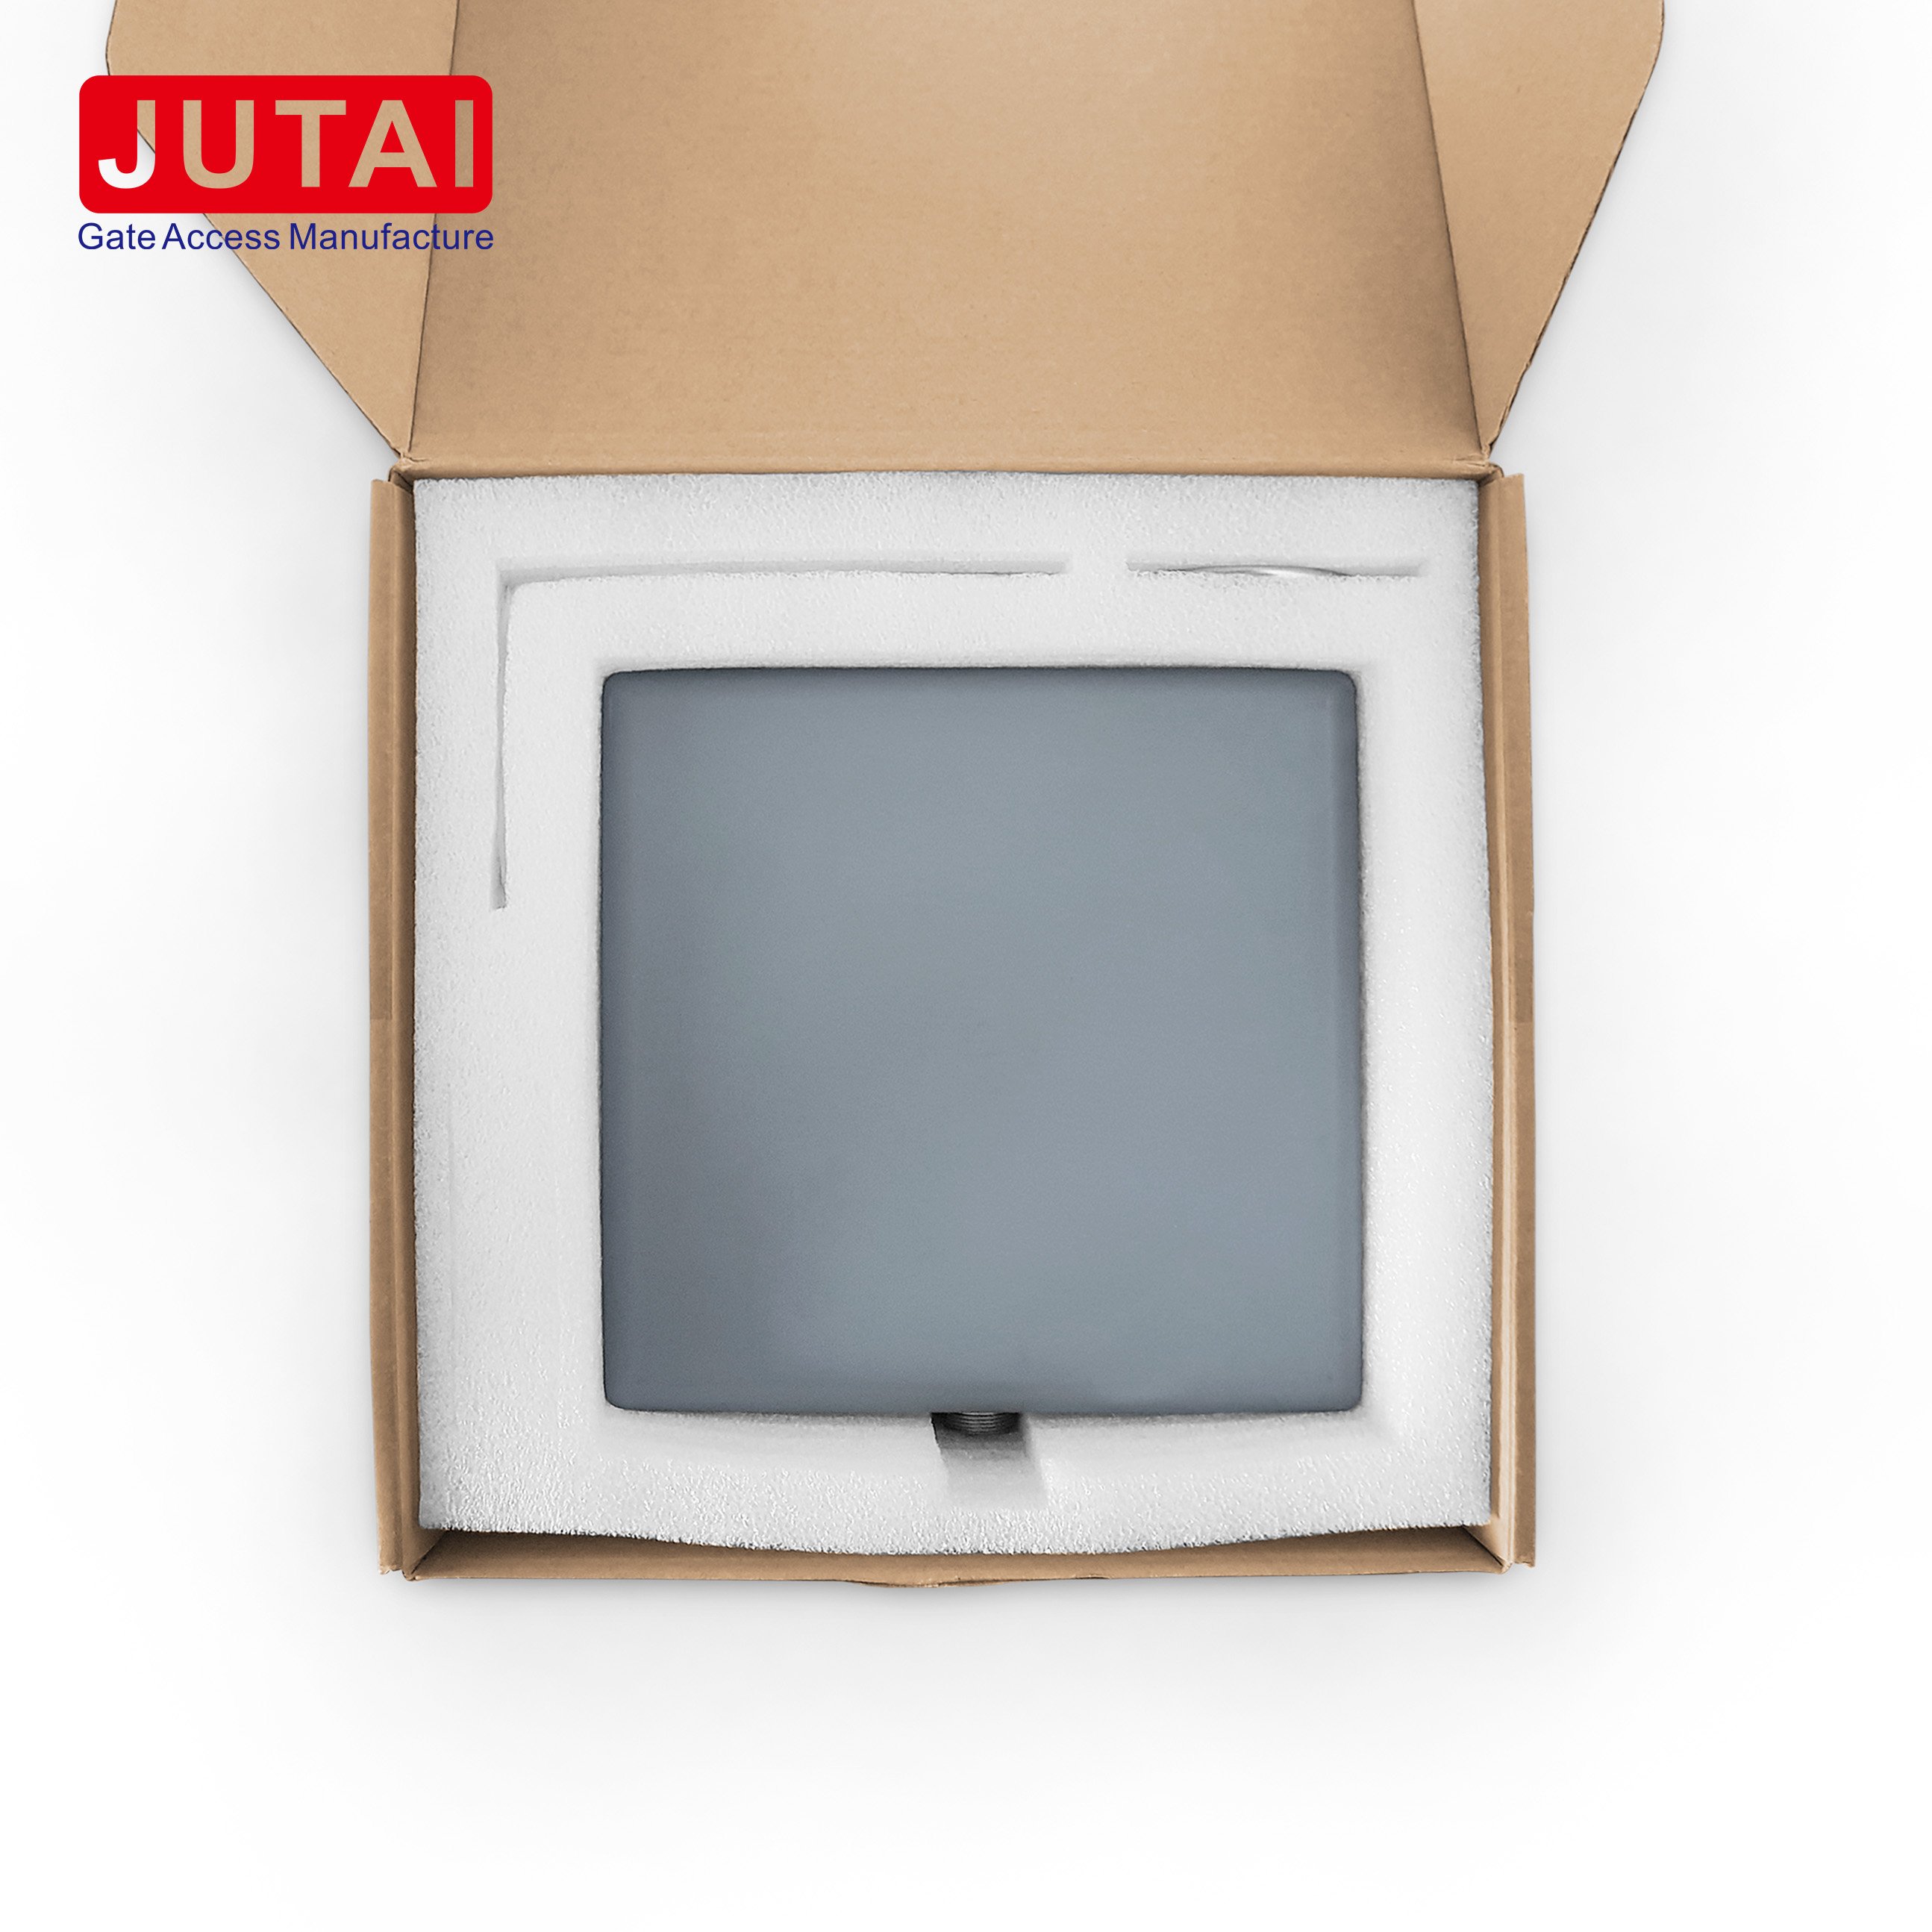 Lector RFID activo de largo alcance JUTAI 2.45G con aprobación CE